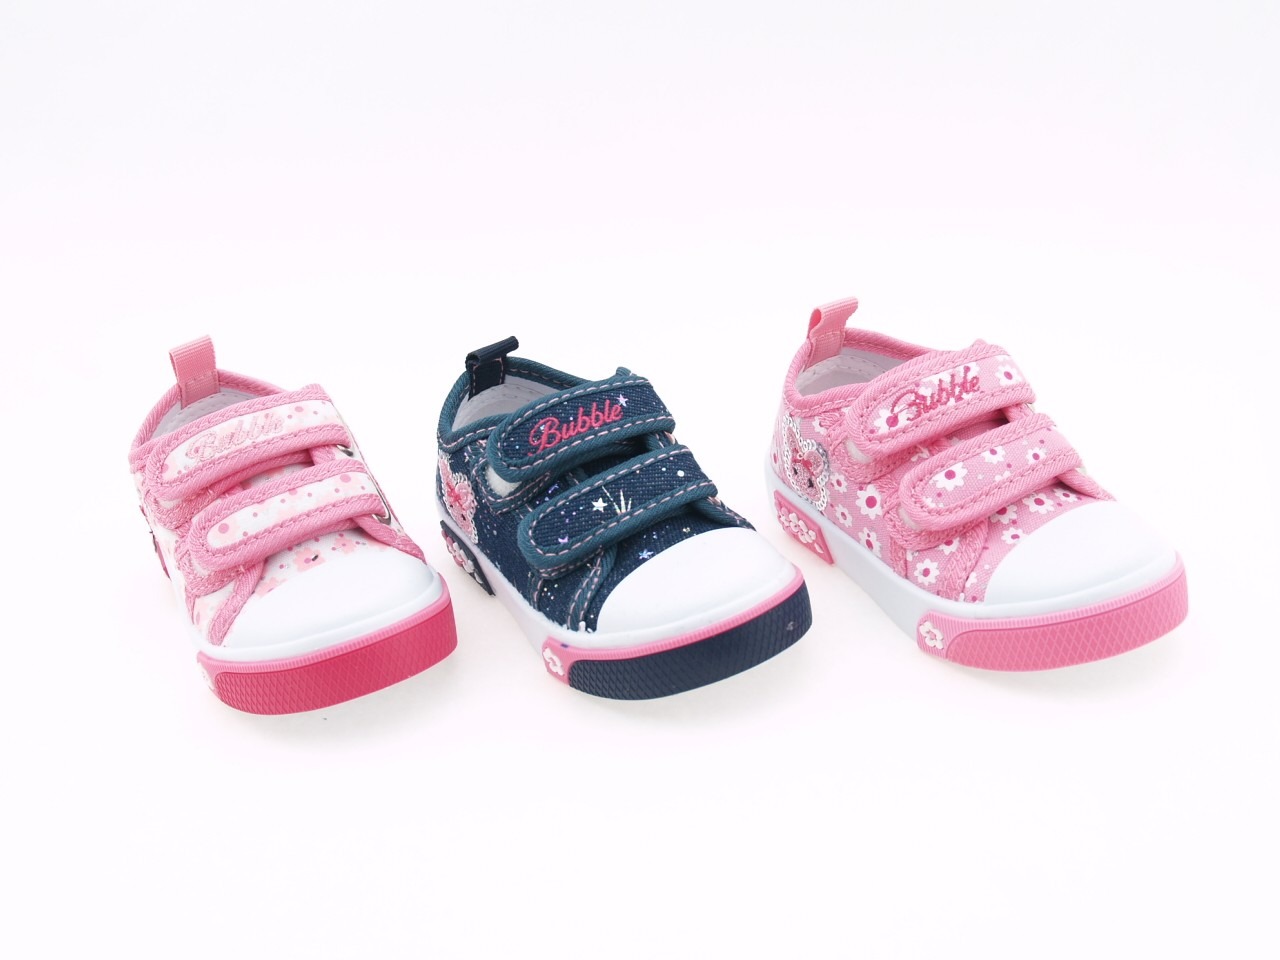 Zapatillas lona niña | El calzado ideal para el verano - Pequeña Huella